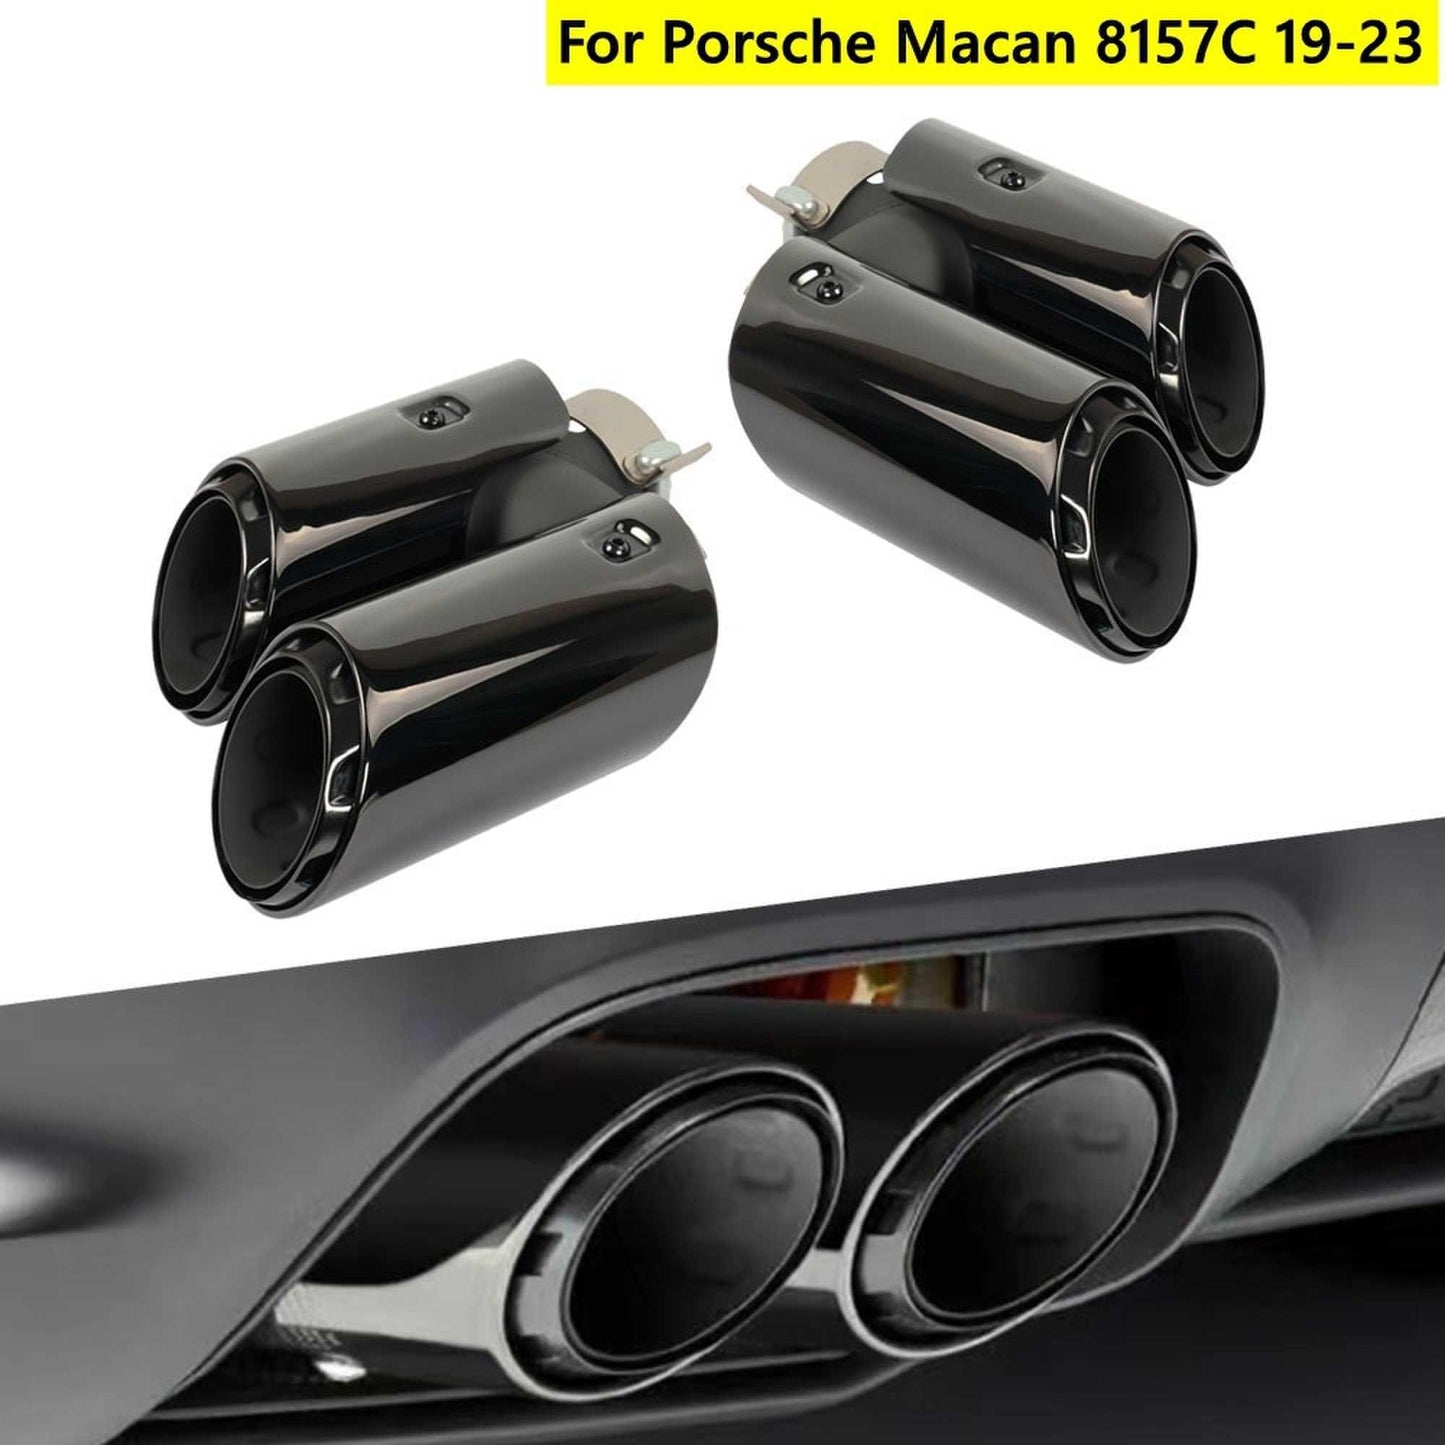 RASTP Stainless Steel Exhaust Muffler Pipe Exhaust Tips for Porsche Macan 8157C 2019-2023 - RASTP